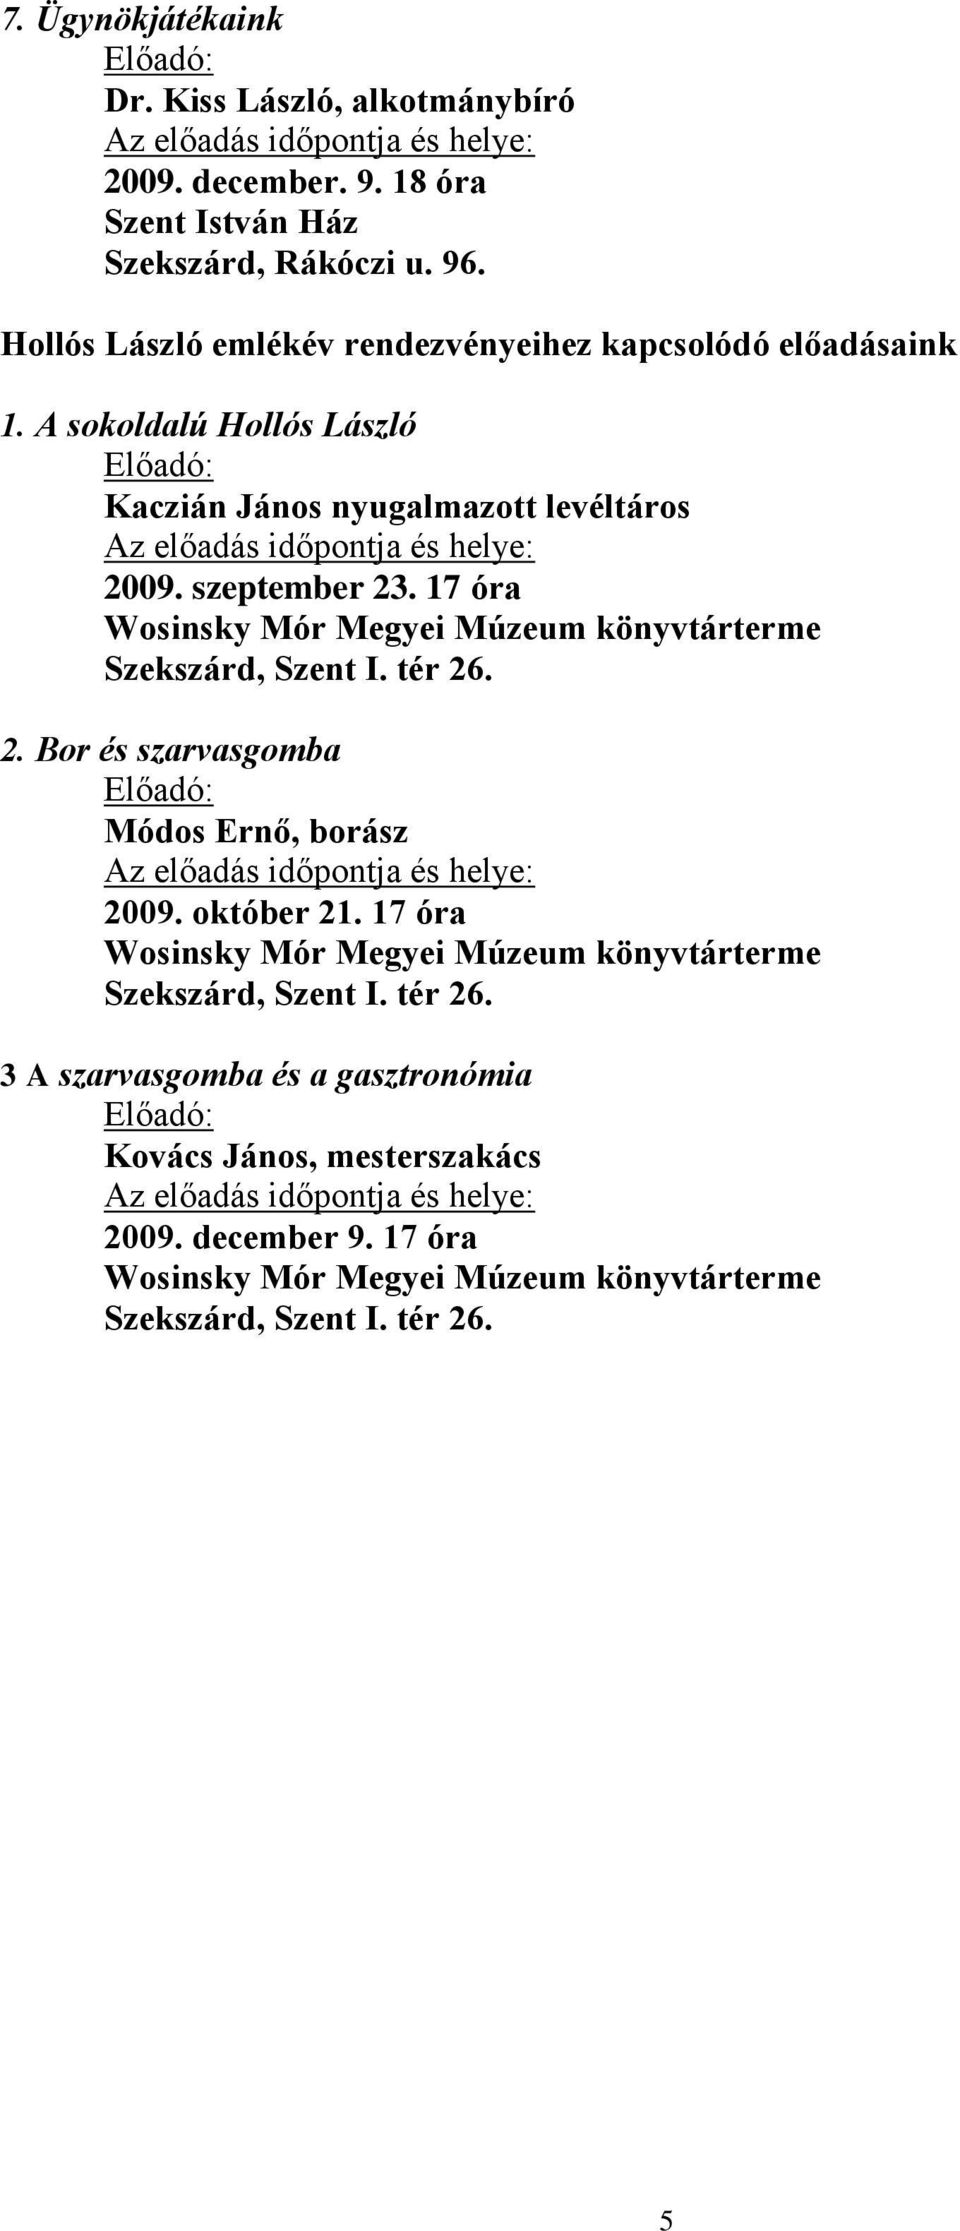 17 óra Wosinsky Mór Megyei Múzeum könyvtárterme Szekszárd, Szent I. tér 26. 2. Bor és szarvasgomba Módos Ernő, borász 2009. október 21.